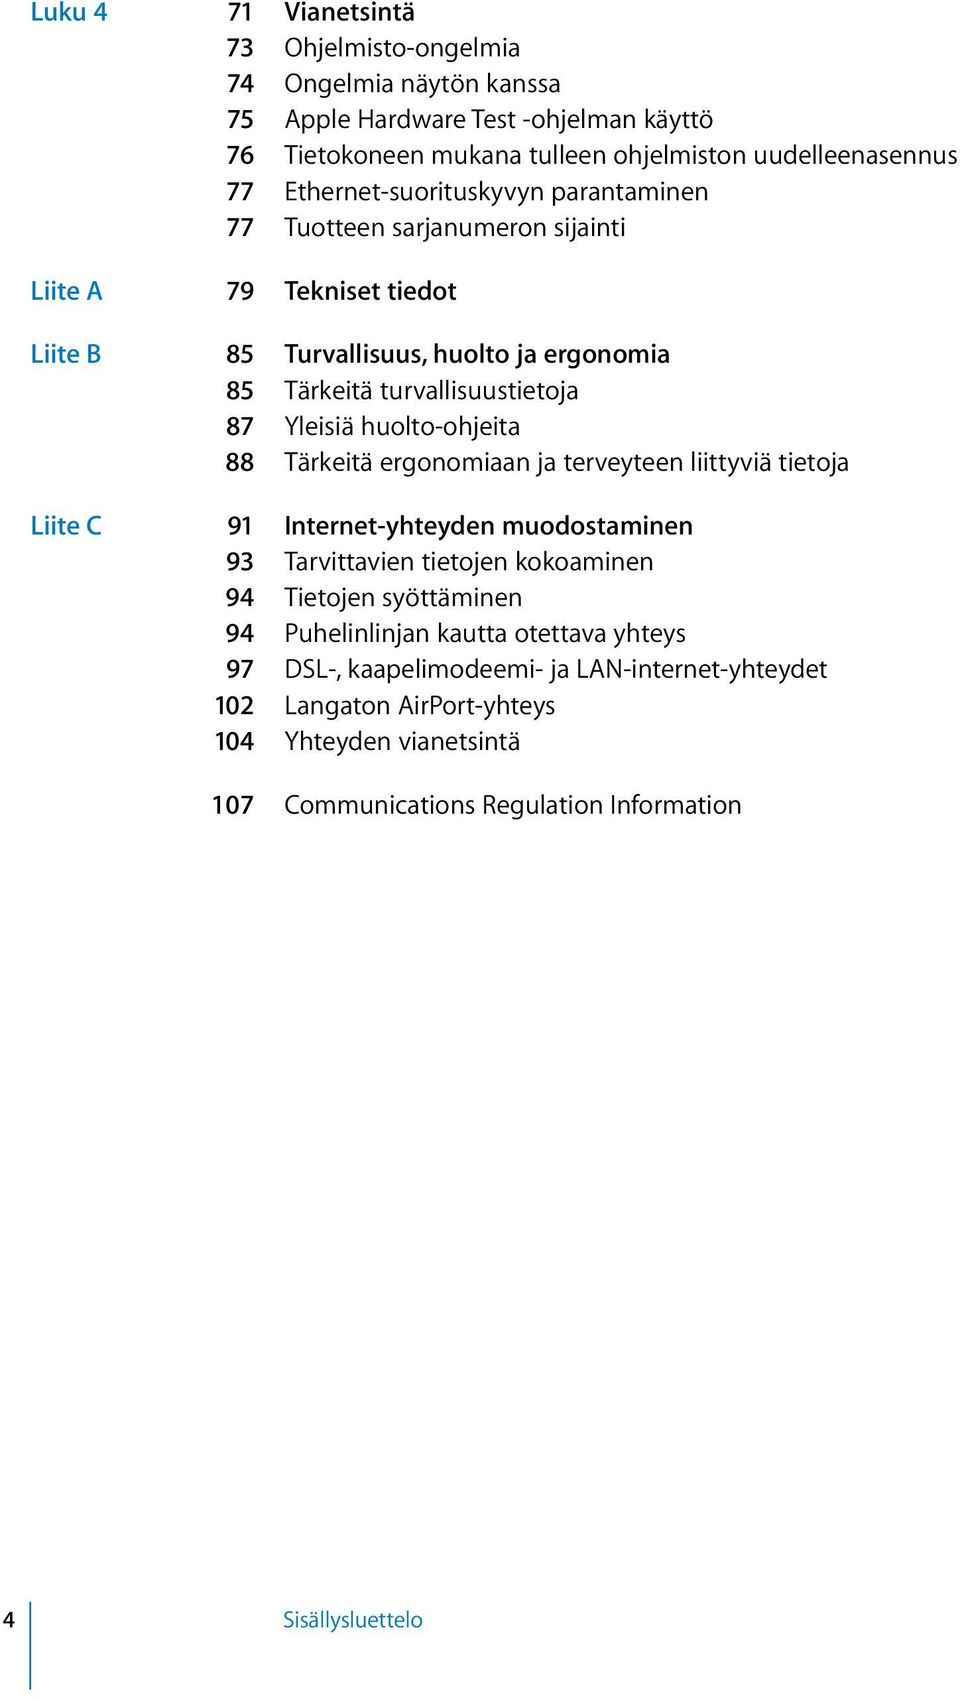 Yleisiä huolto-ohjeita 88 Tärkeitä ergonomiaan ja terveyteen liittyviä tietoja Liite C 91 Internet-yhteyden muodostaminen 93 Tarvittavien tietojen kokoaminen 94 Tietojen syöttäminen